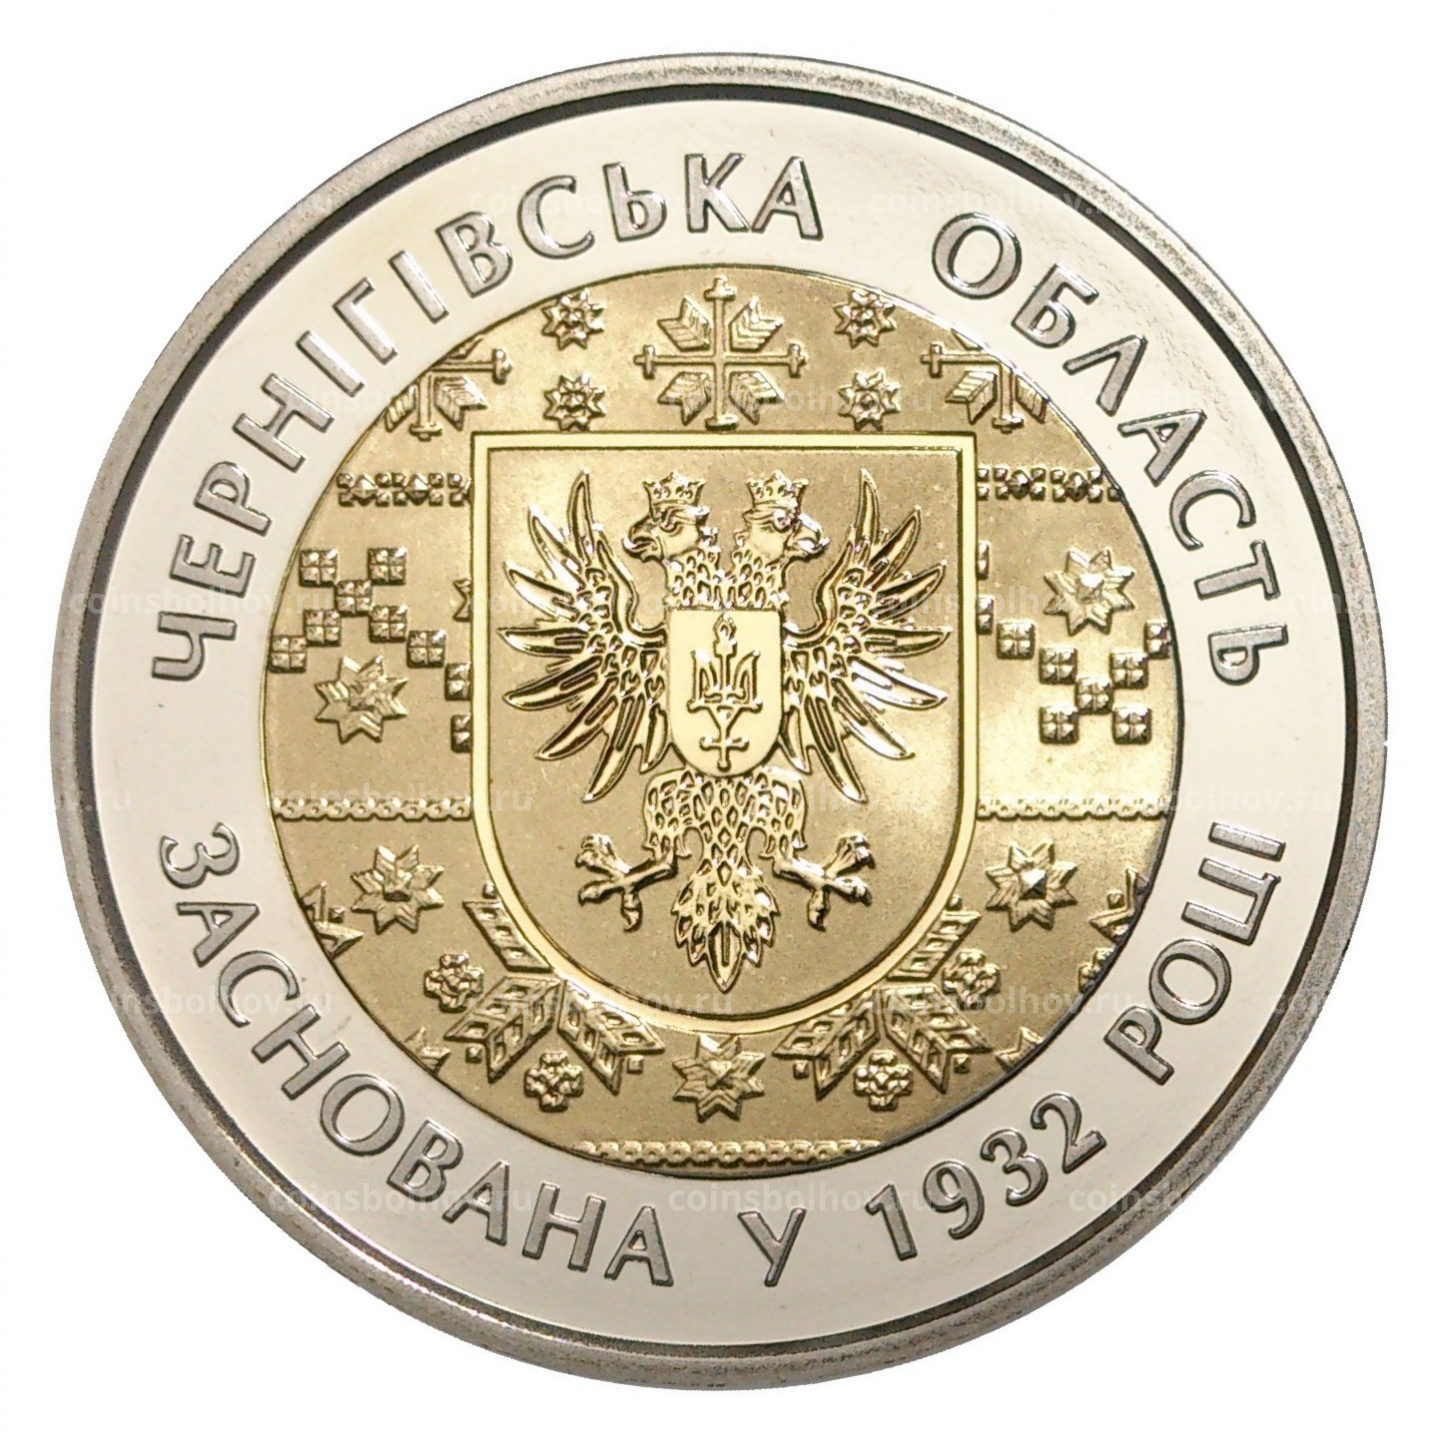 Coinsbolhov. Купить монету Украины 5 гривны 2017 года Черниговская епархия.